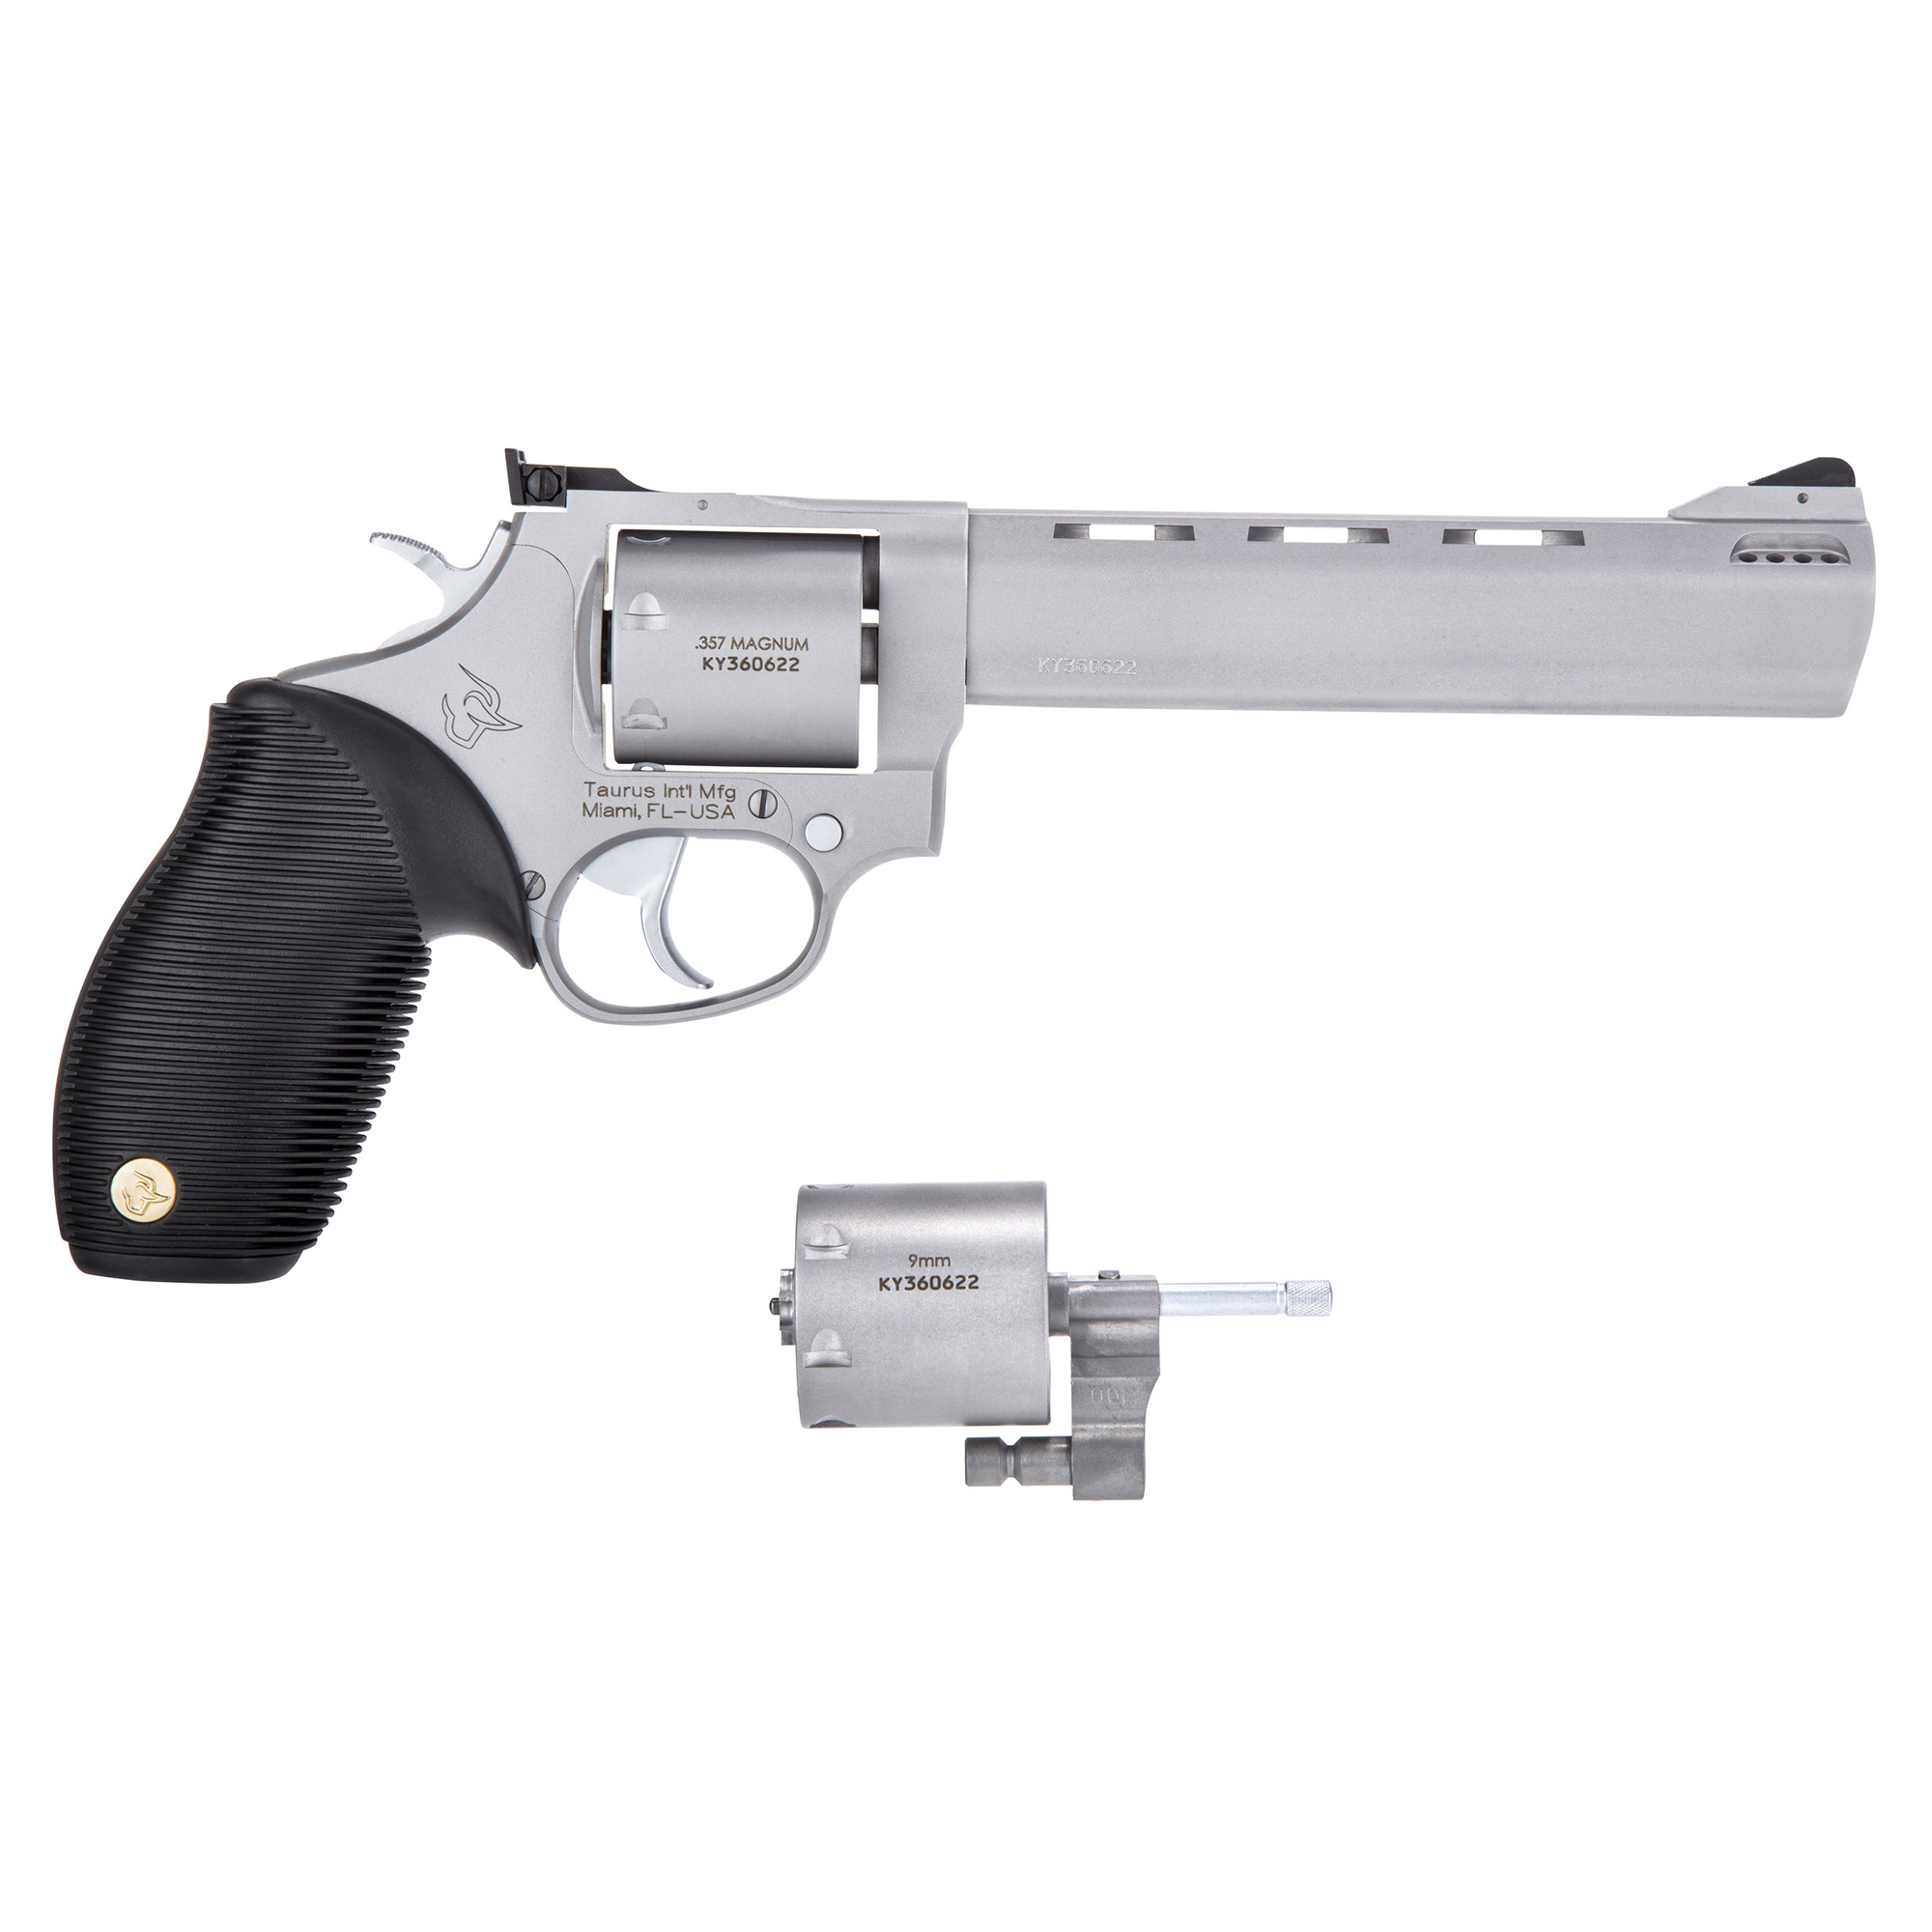 Taurus 692, Revolver, Medium Frame, 357mag/38spl/9mm, 6.5" Barrel, Ste...